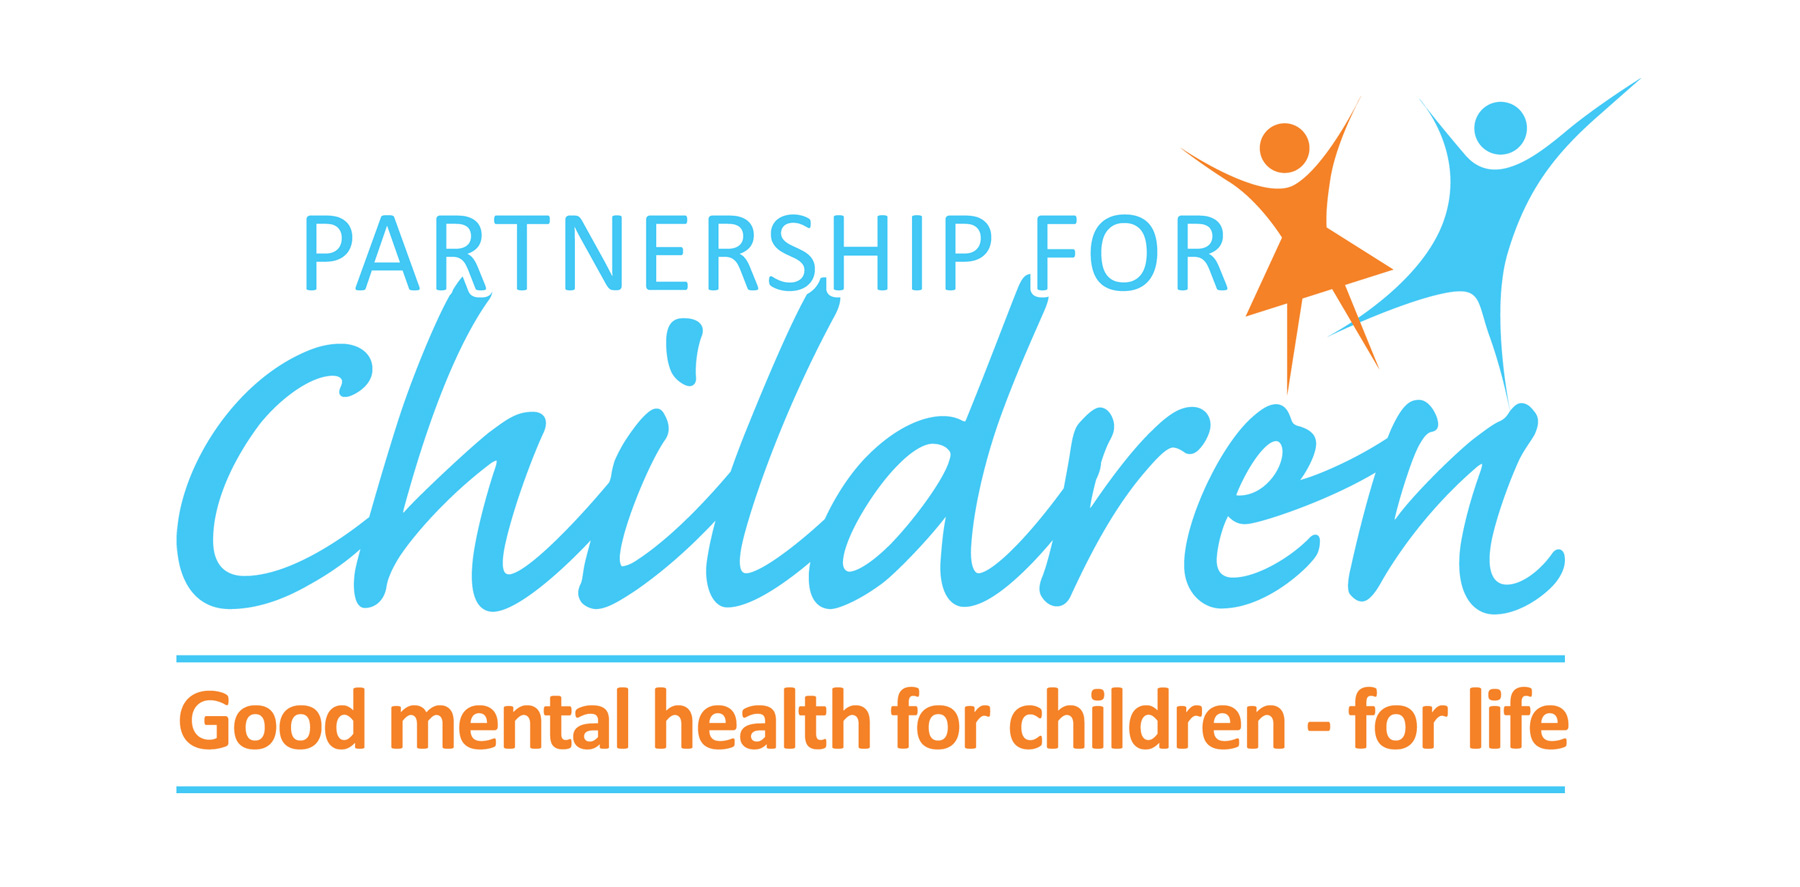 Partnership for children logo